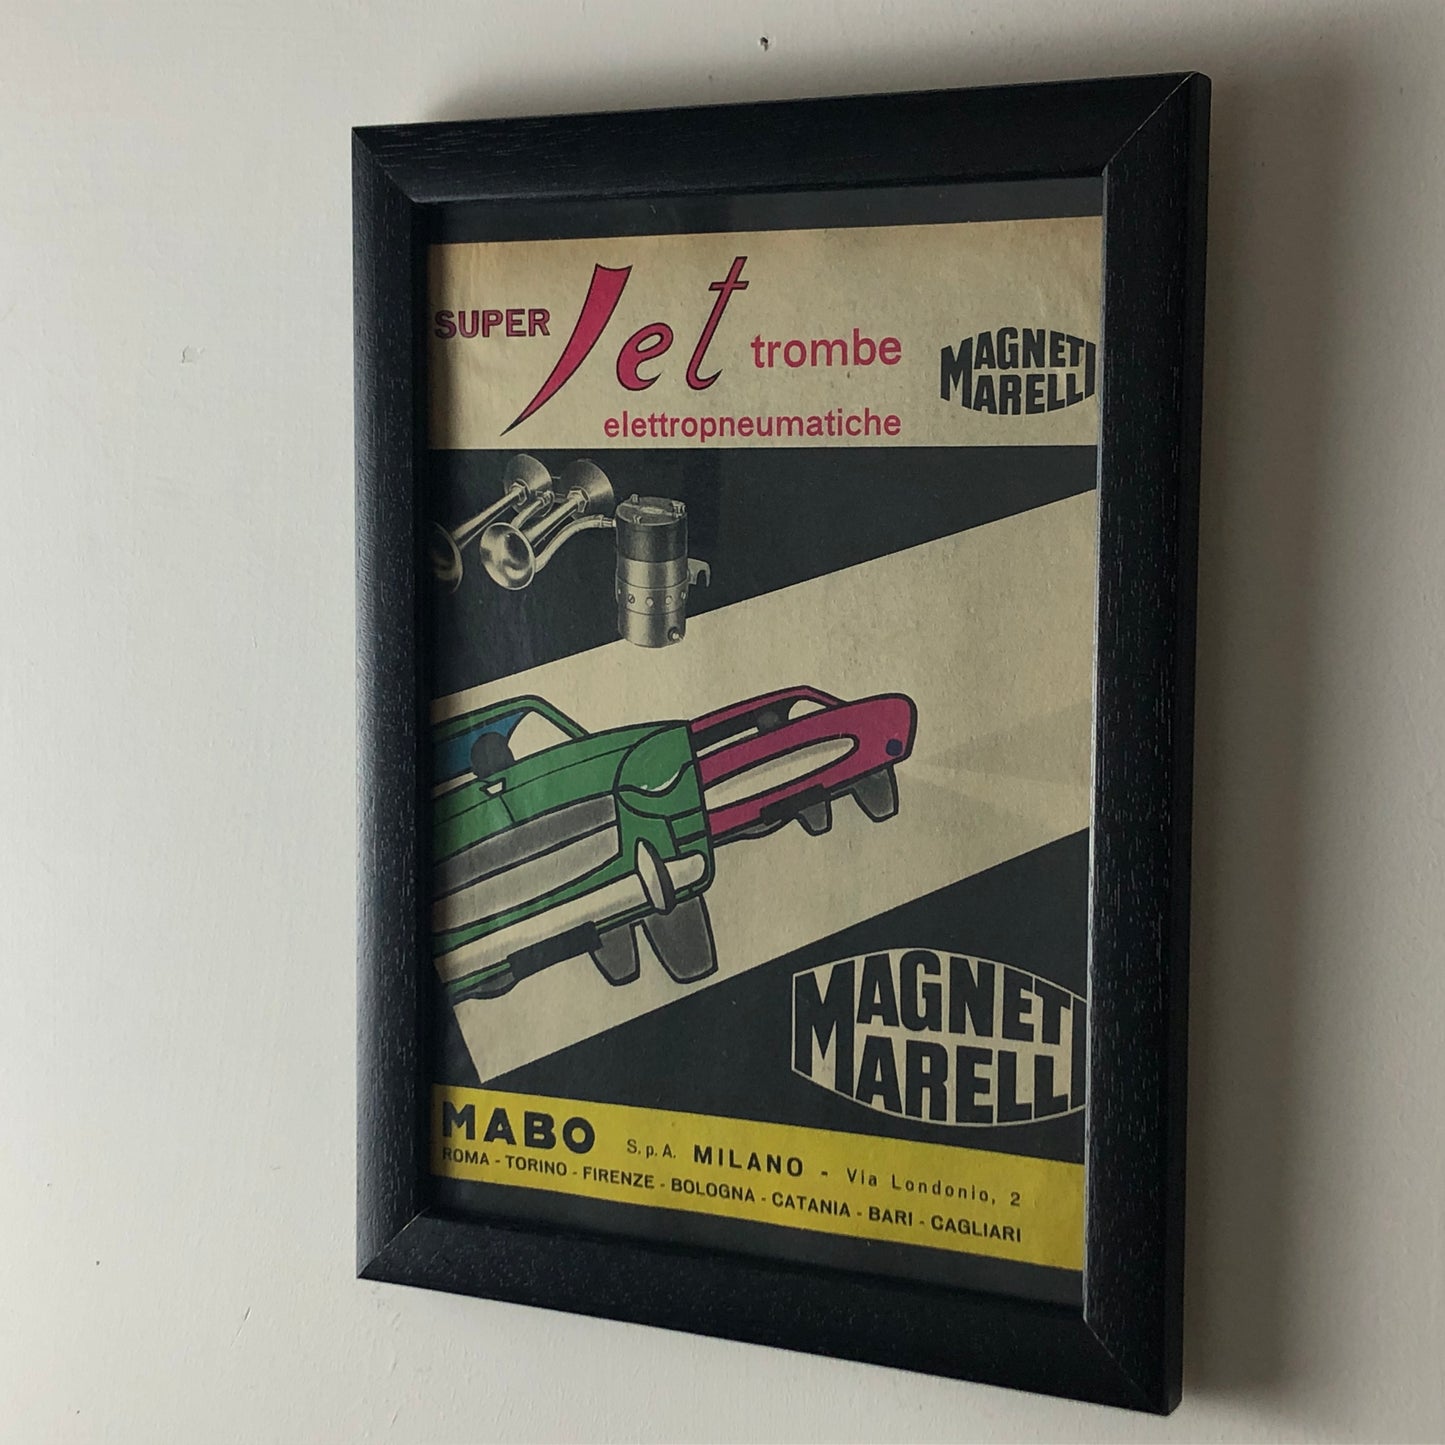 Magneti Marelli, Pubblicità Anno 1960 Magneti Marelli Super Jet Trombe Elettropneumatiche Disegnata dallo Studio Dalla Costa.